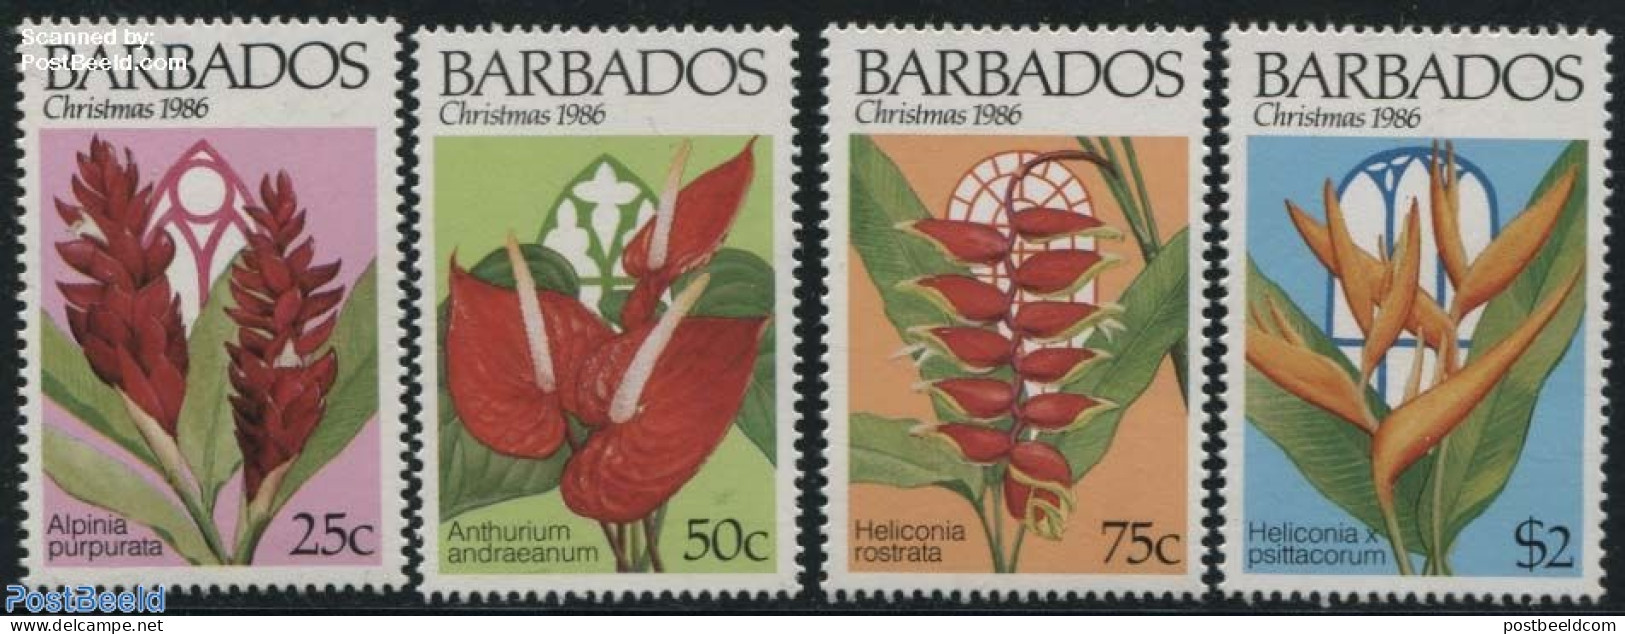 Barbados 1986 Christmas 4v, Mint NH, Nature - Religion - Flowers & Plants - Christmas - Christmas